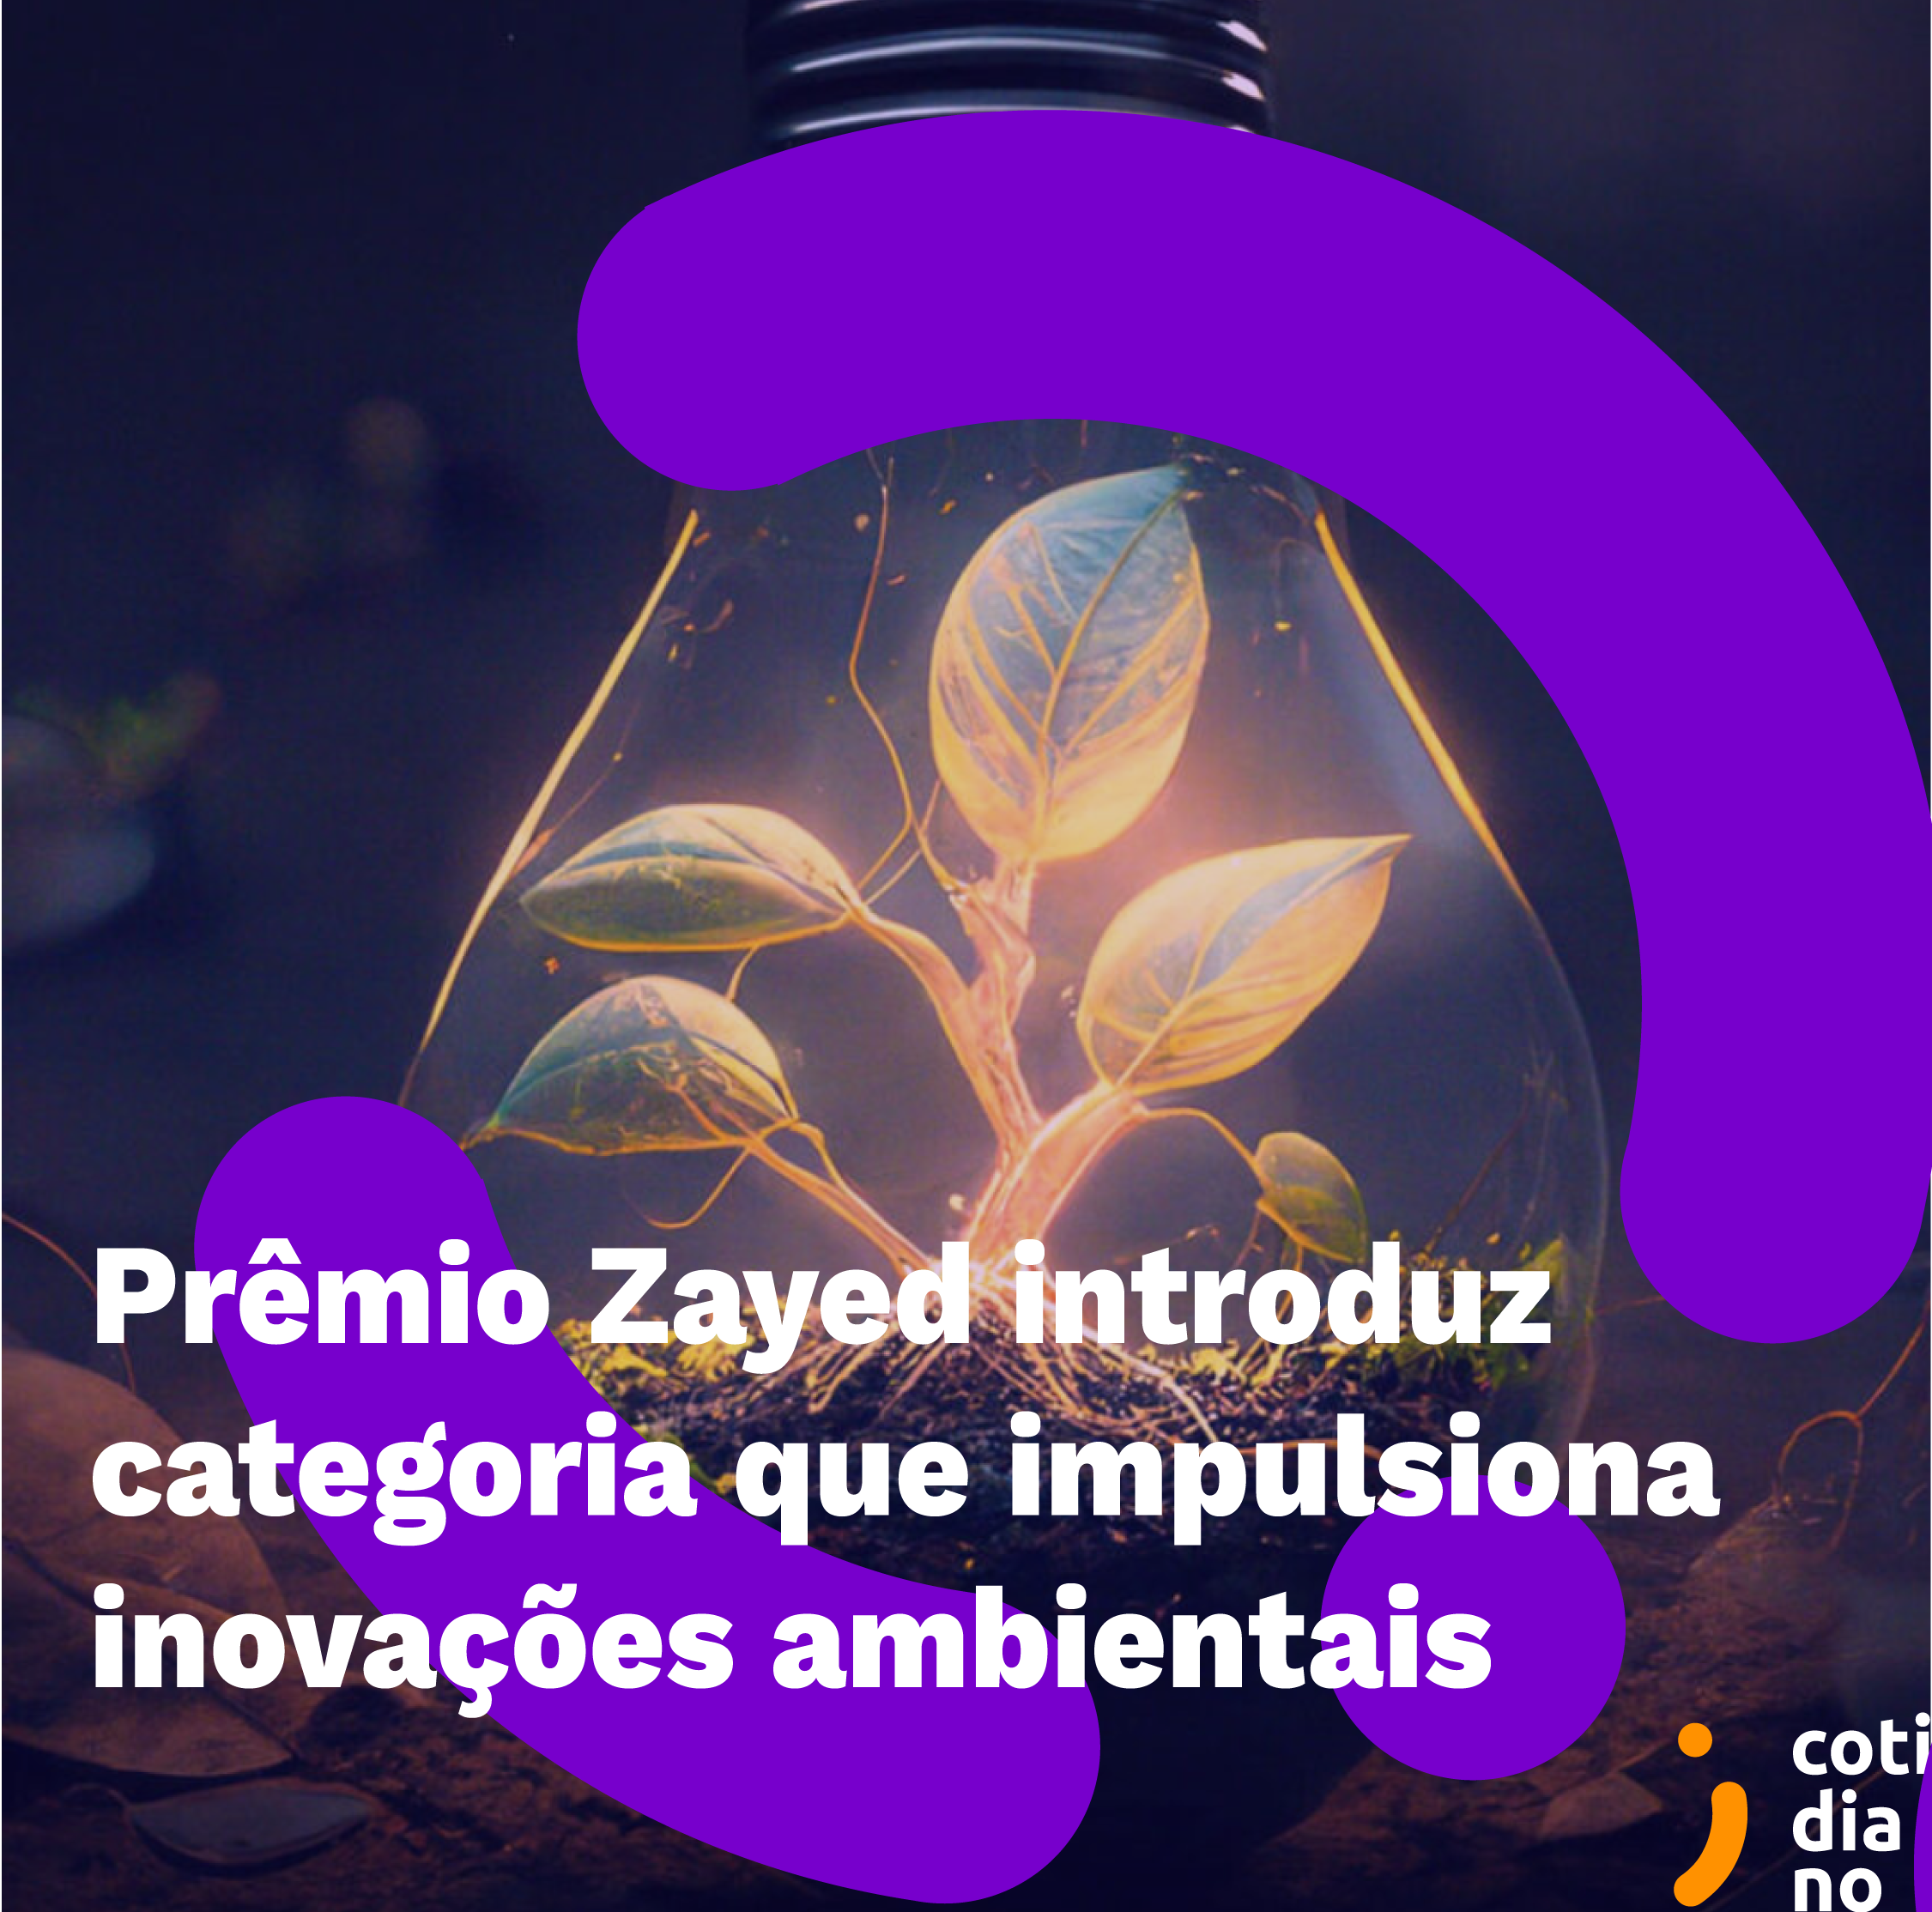 Prêmio Zayed de Sustentabilidade introduz nova categoria que impulsiona inovações ambientais